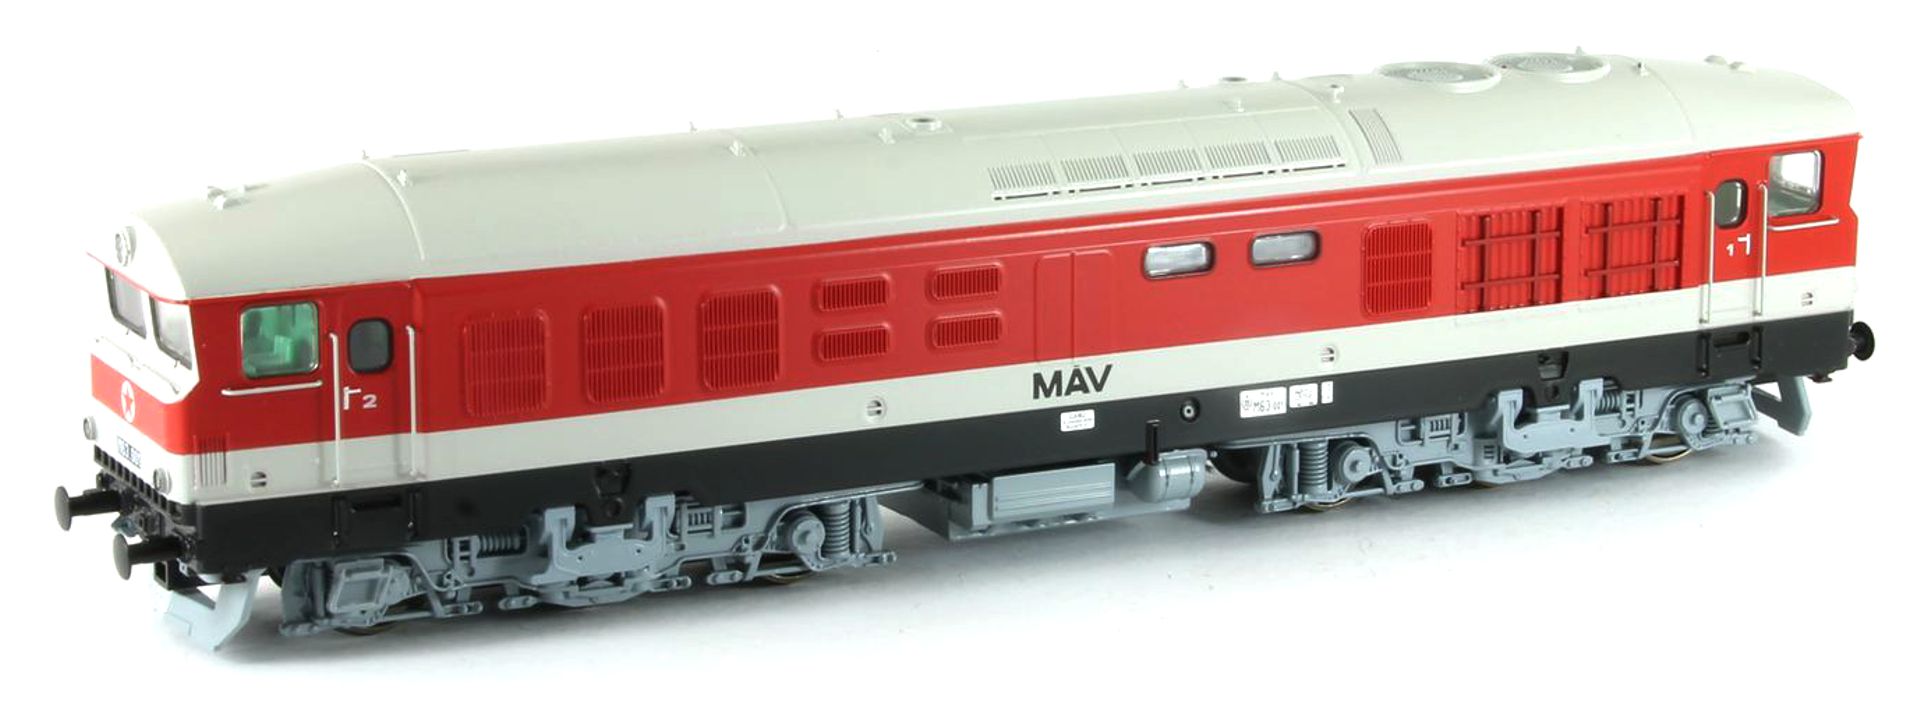 mtb H0MAVM63001 - Diesellok M63 001, MAV, Ep.IV